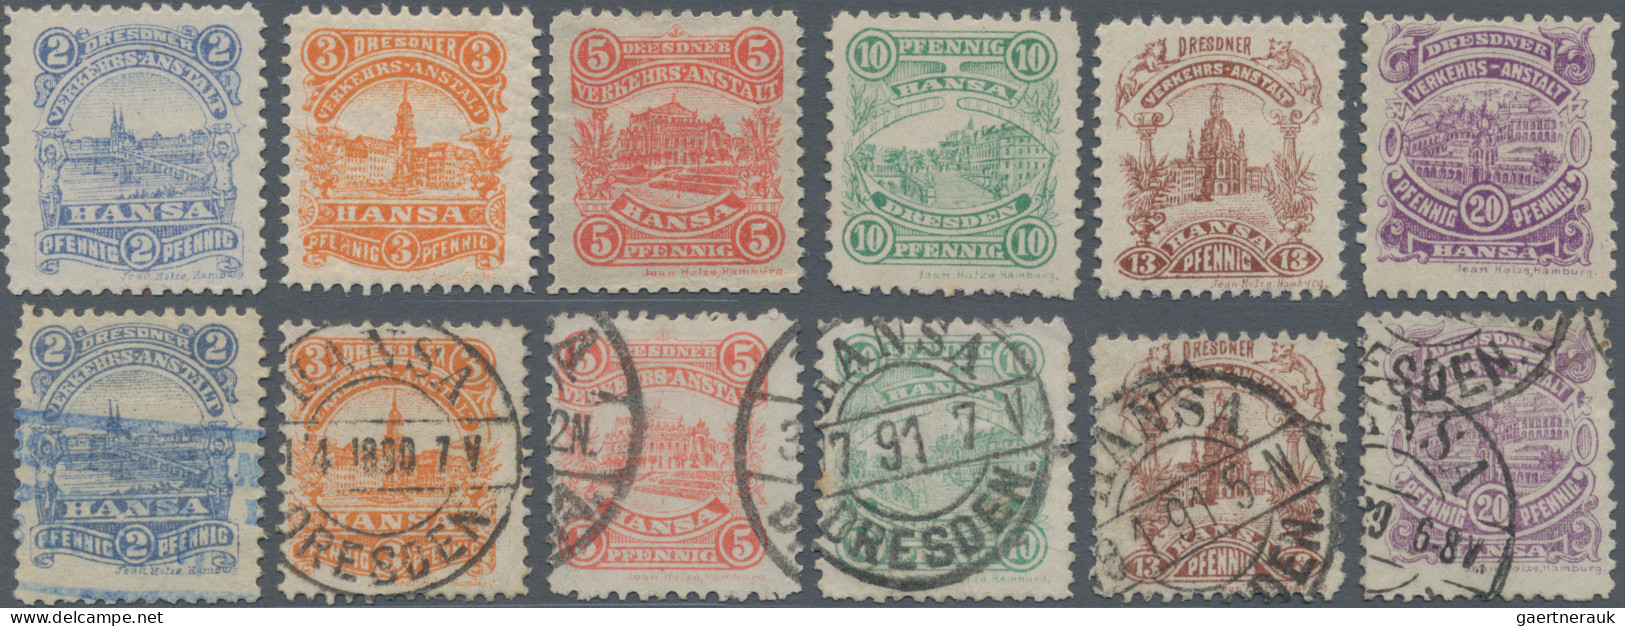 Deutsches Reich - Privatpost (Stadtpost): DRESDEN/Hansa, 1890, 2-20 Pf. Ansichte - Postes Privées & Locales